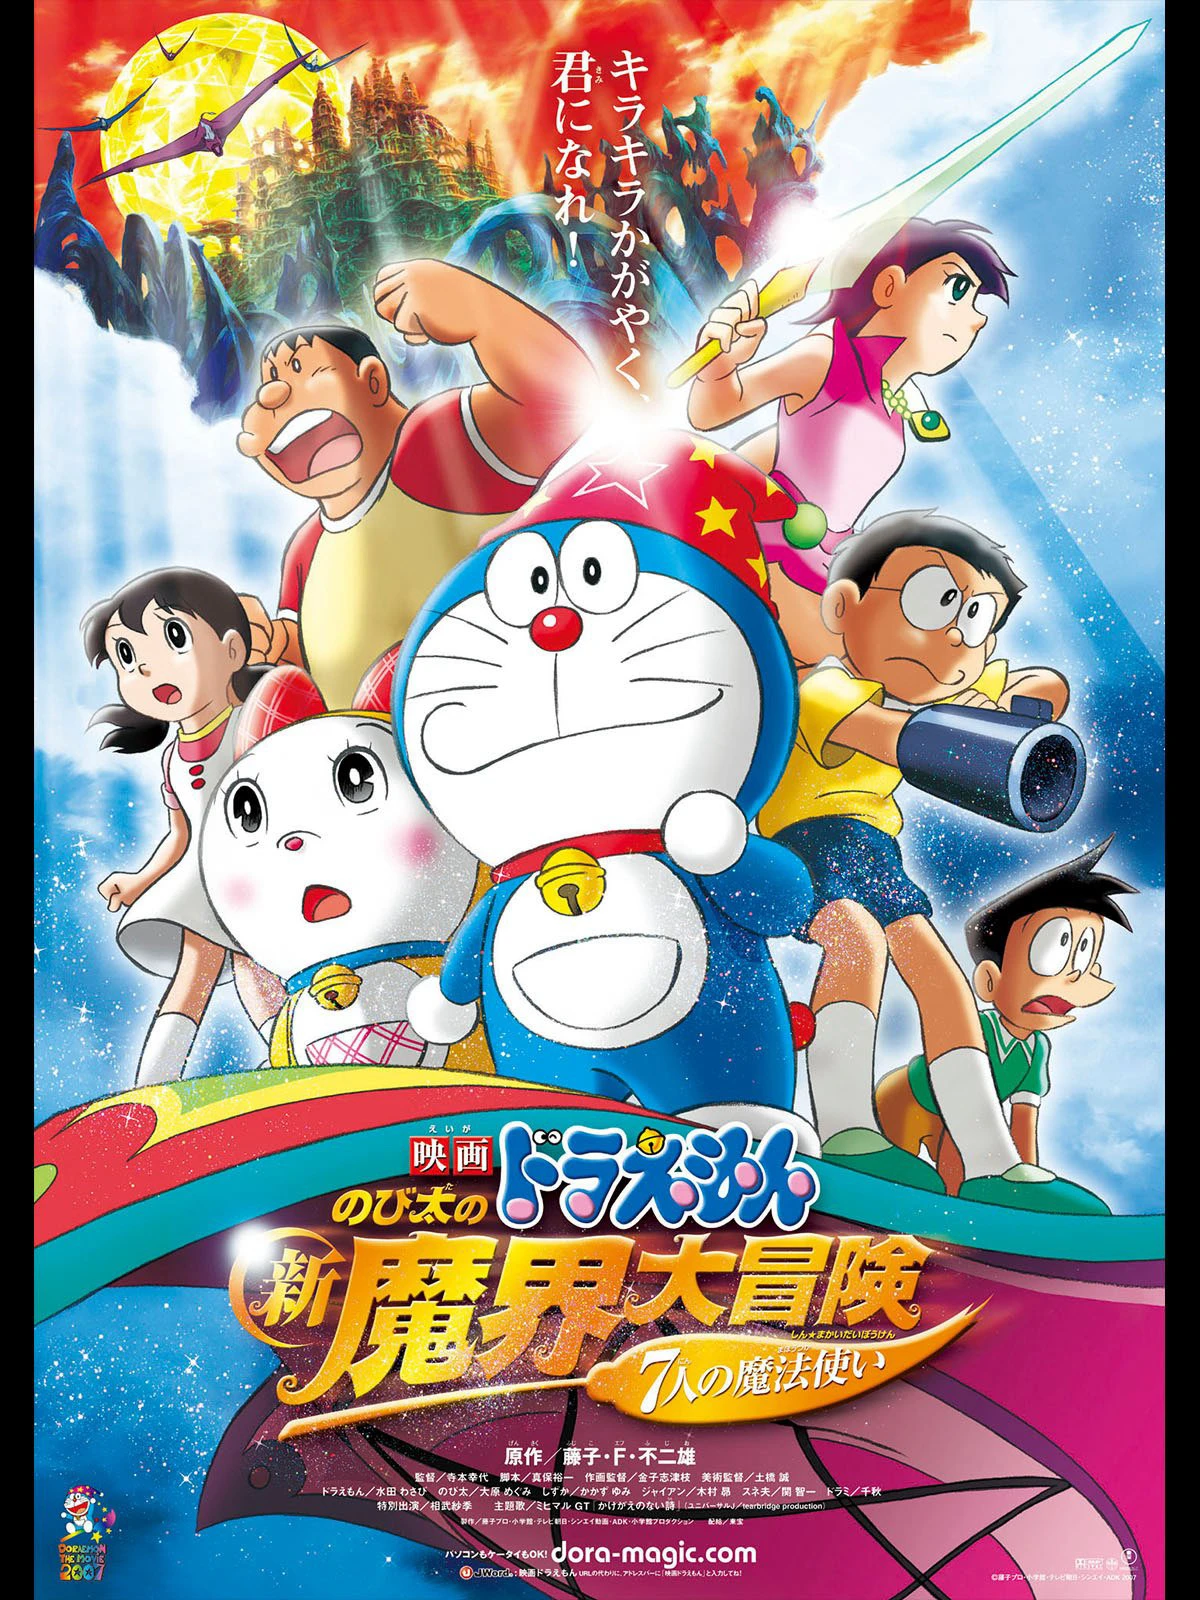 Doraemon the Movie: Nobita's New Great Adventure into the Underworld | Doraemon the Movie: Nobita's New Great Adventure into the Underworld (2007)